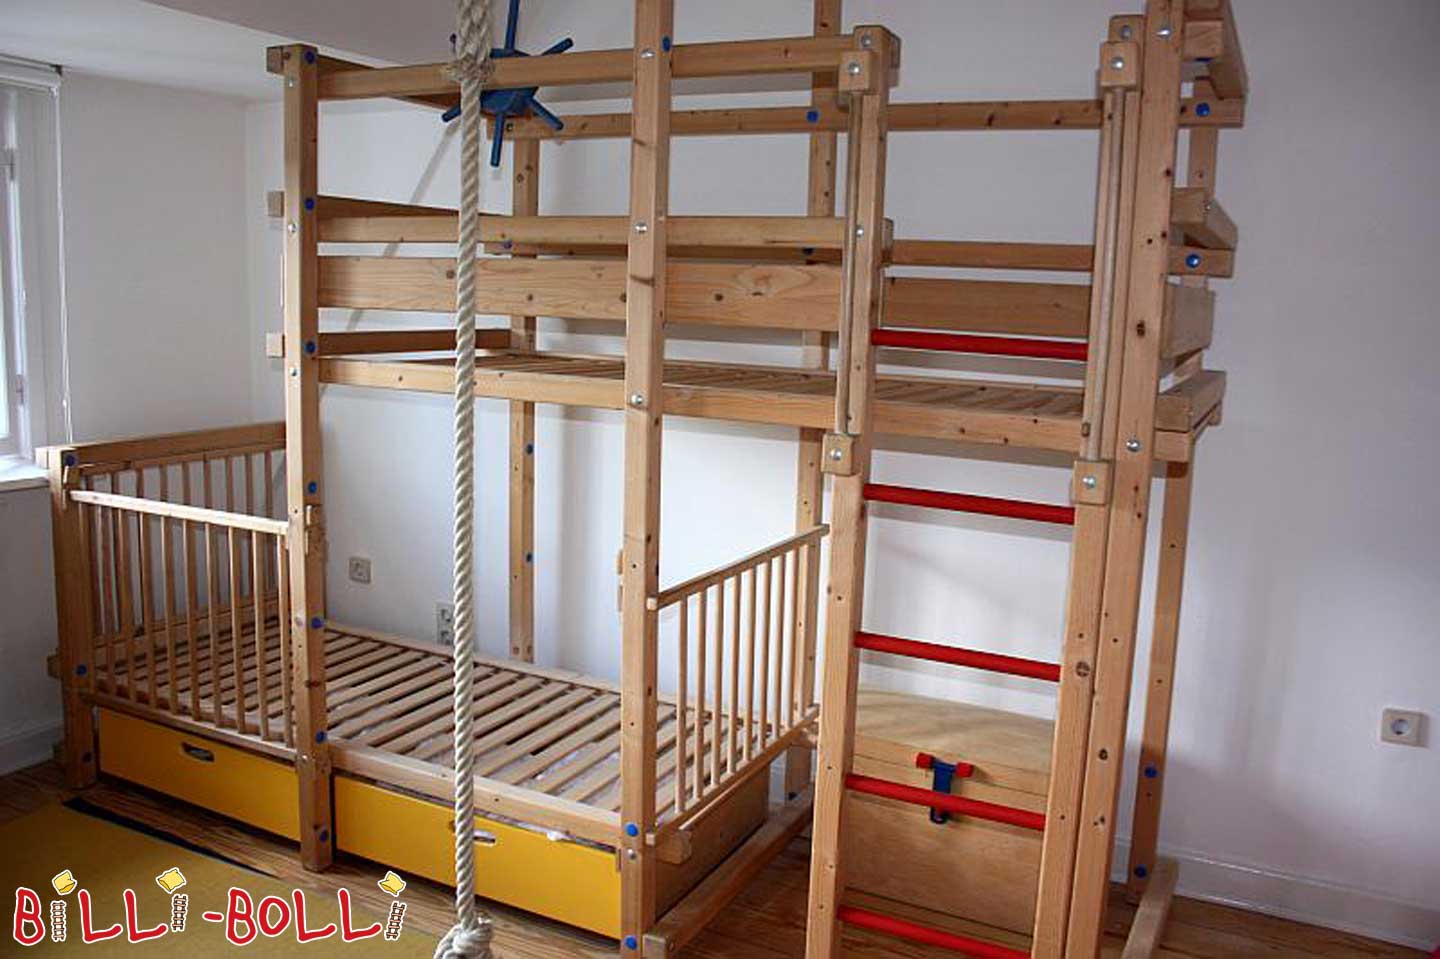 Billi-Bolli divstāvu gulta sāniski nobīdīta (Kategorija: Izmantota divstāvu gulta)